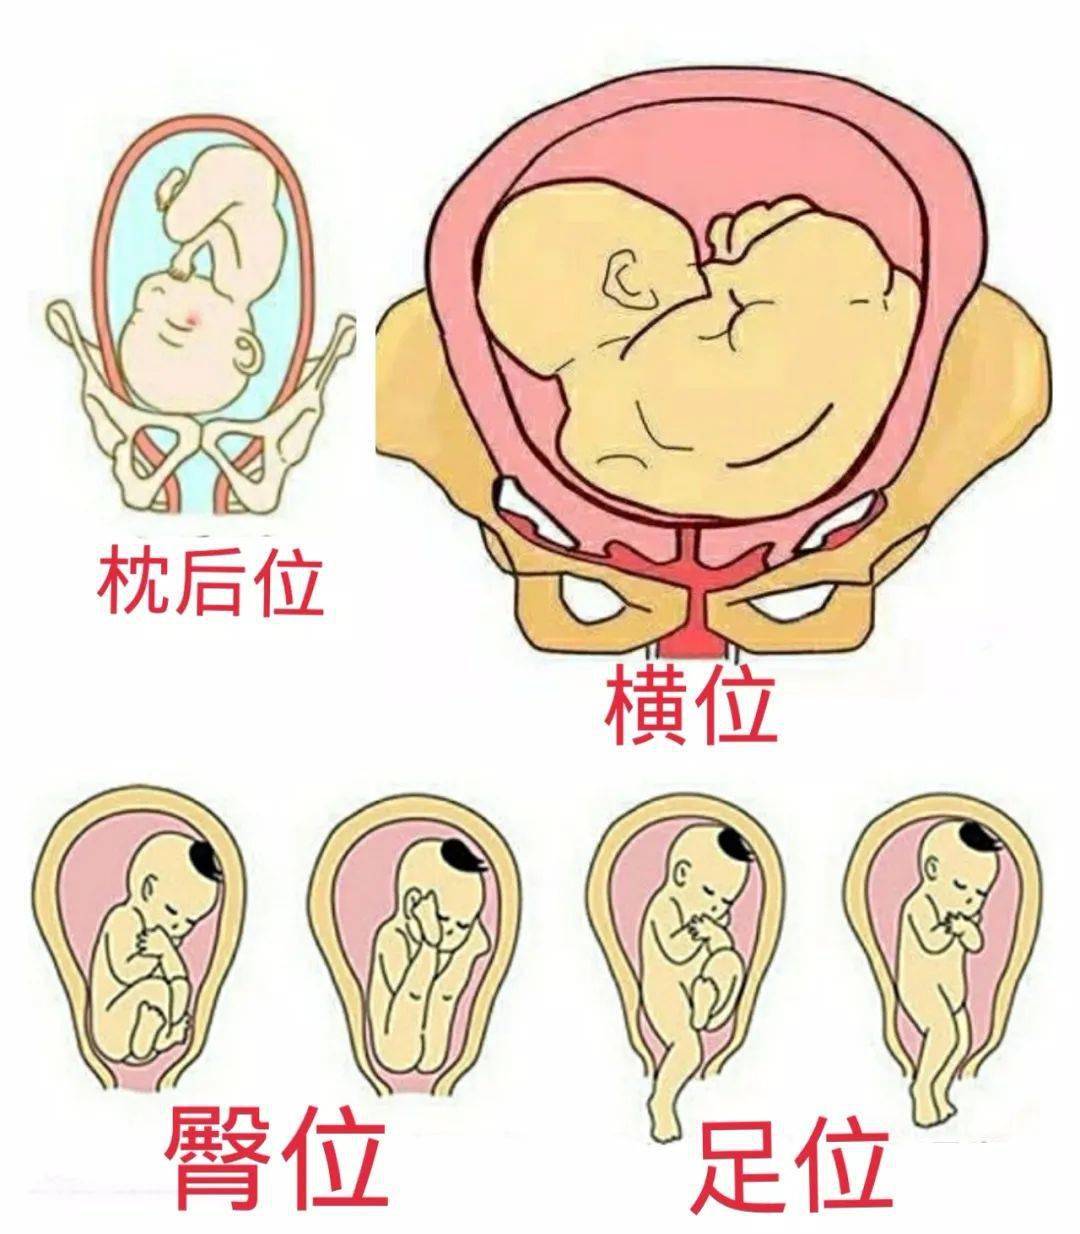 临床上常见的有臀位,横位,枕后位以及足位等异常胎位,多见于腹壁松弛